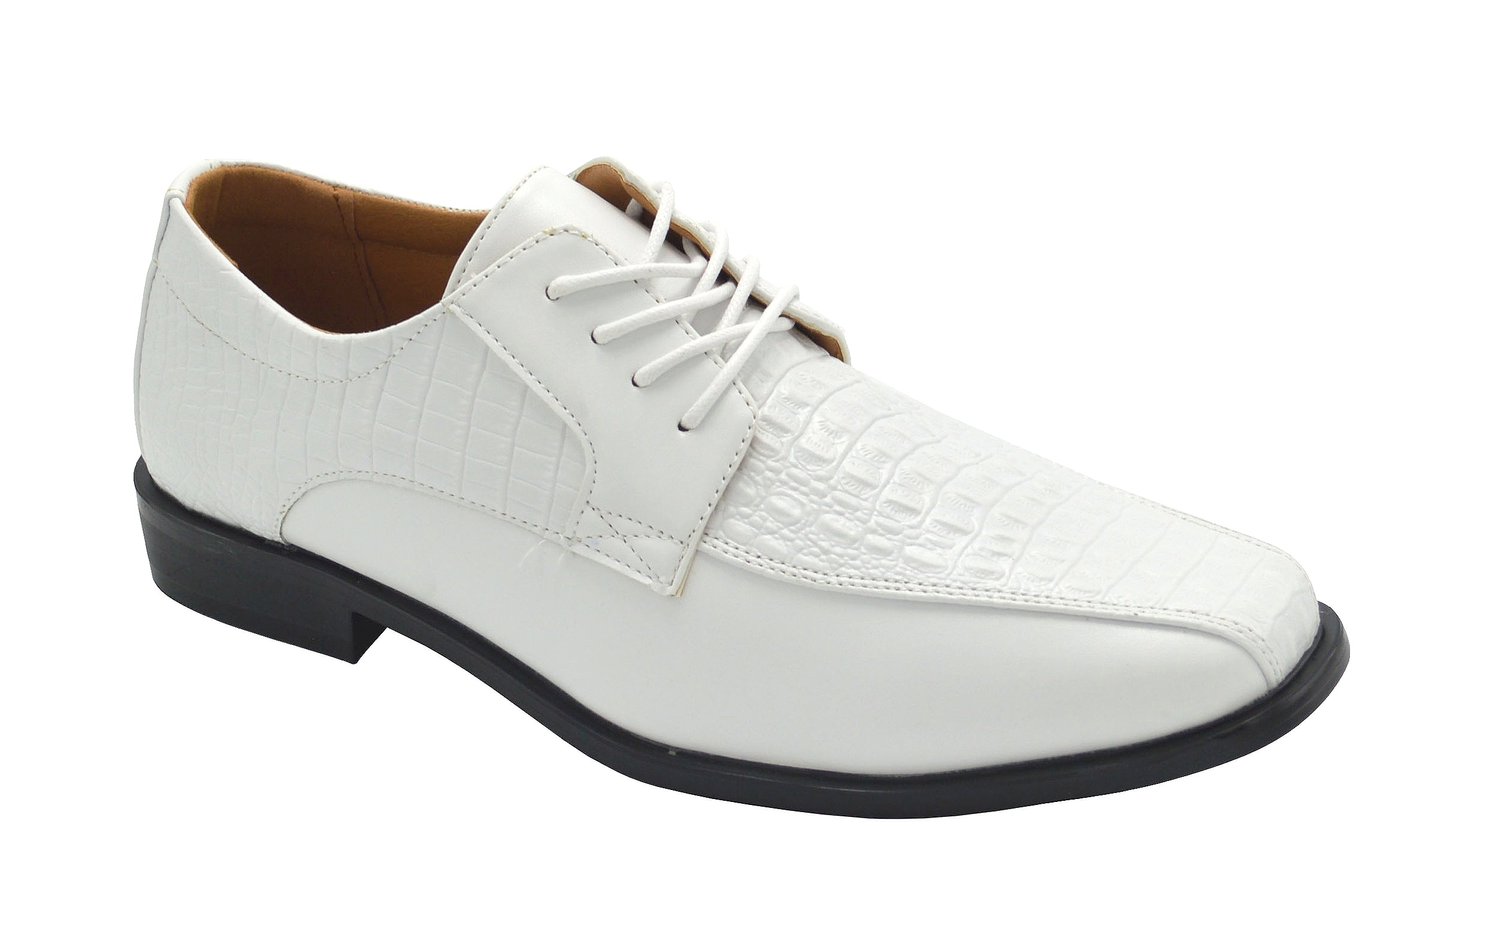 Wholesale Men's Shoes For Men Dress Derby Barclay NGM2